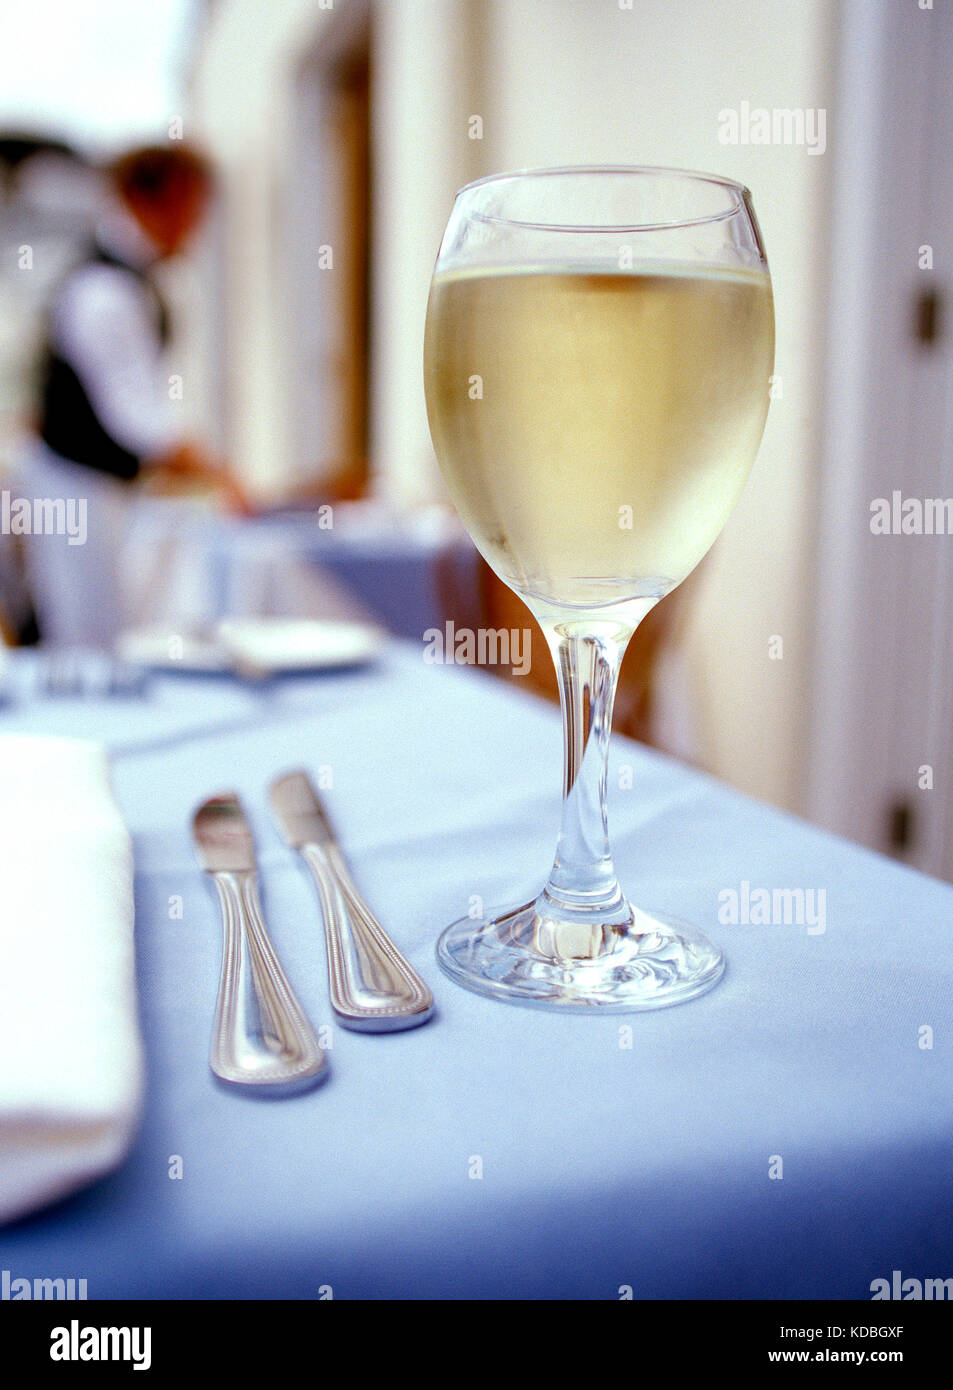 Strill leben. Essen. Restaurant interior Tisch mit einem Glas Weisswein. Stockfoto